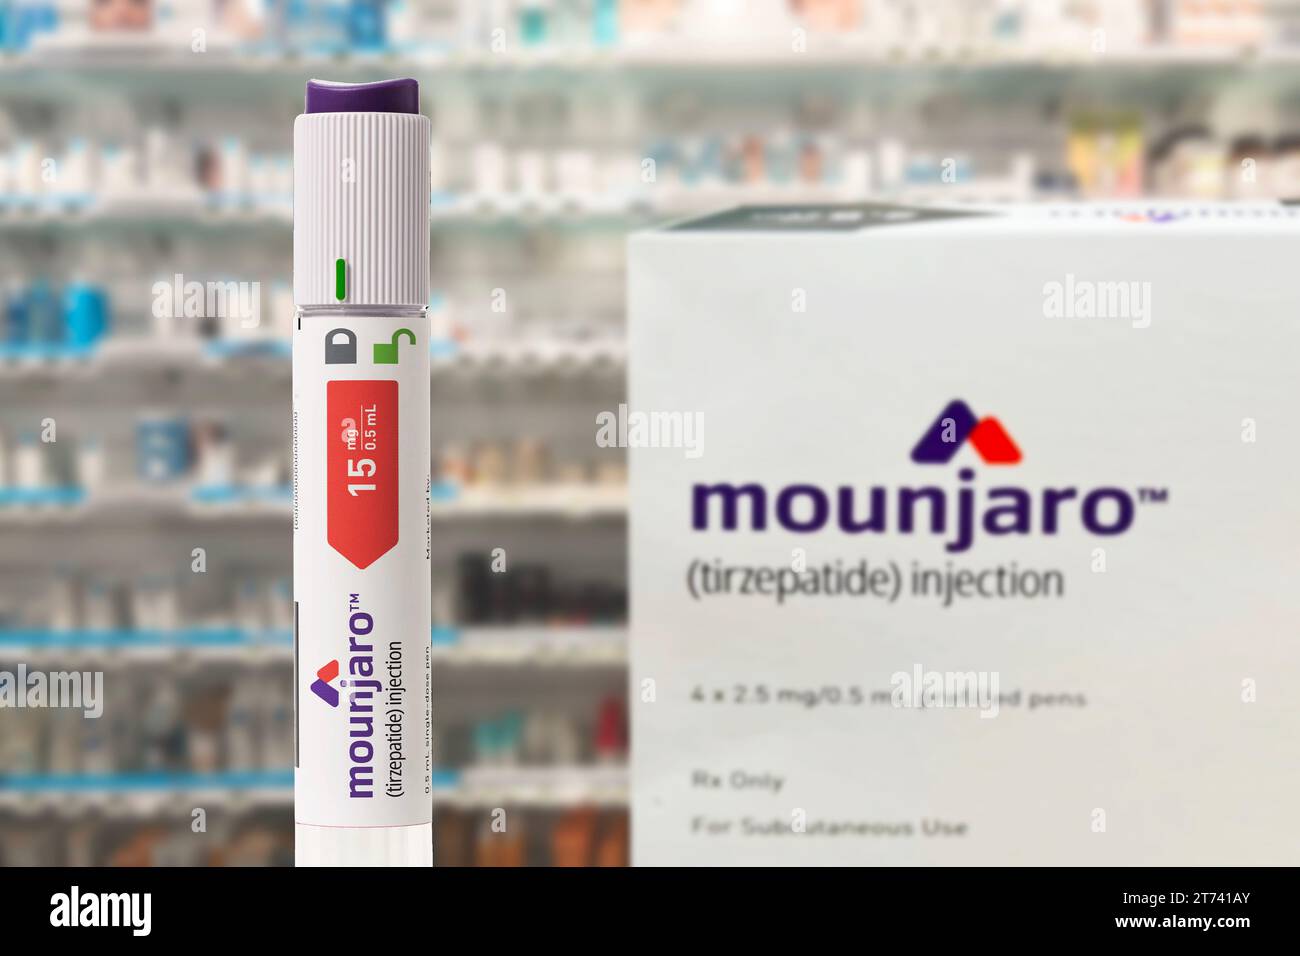 Mounjaro - Tirzepatide avec stylo d'injection est un médicament antidiabétique utilisé pour le traitement du diabète et pour perdre du poids. Concentrez-vous sur le premier plan. Co Banque D'Images